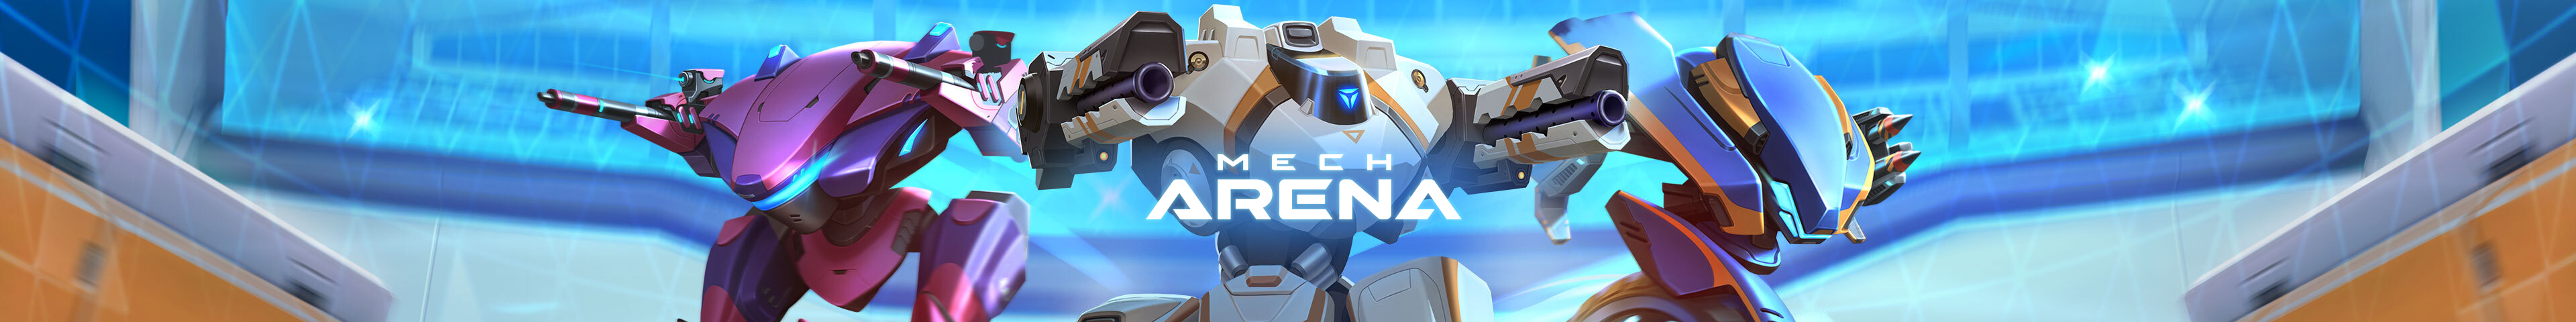 Mech Arena - PT